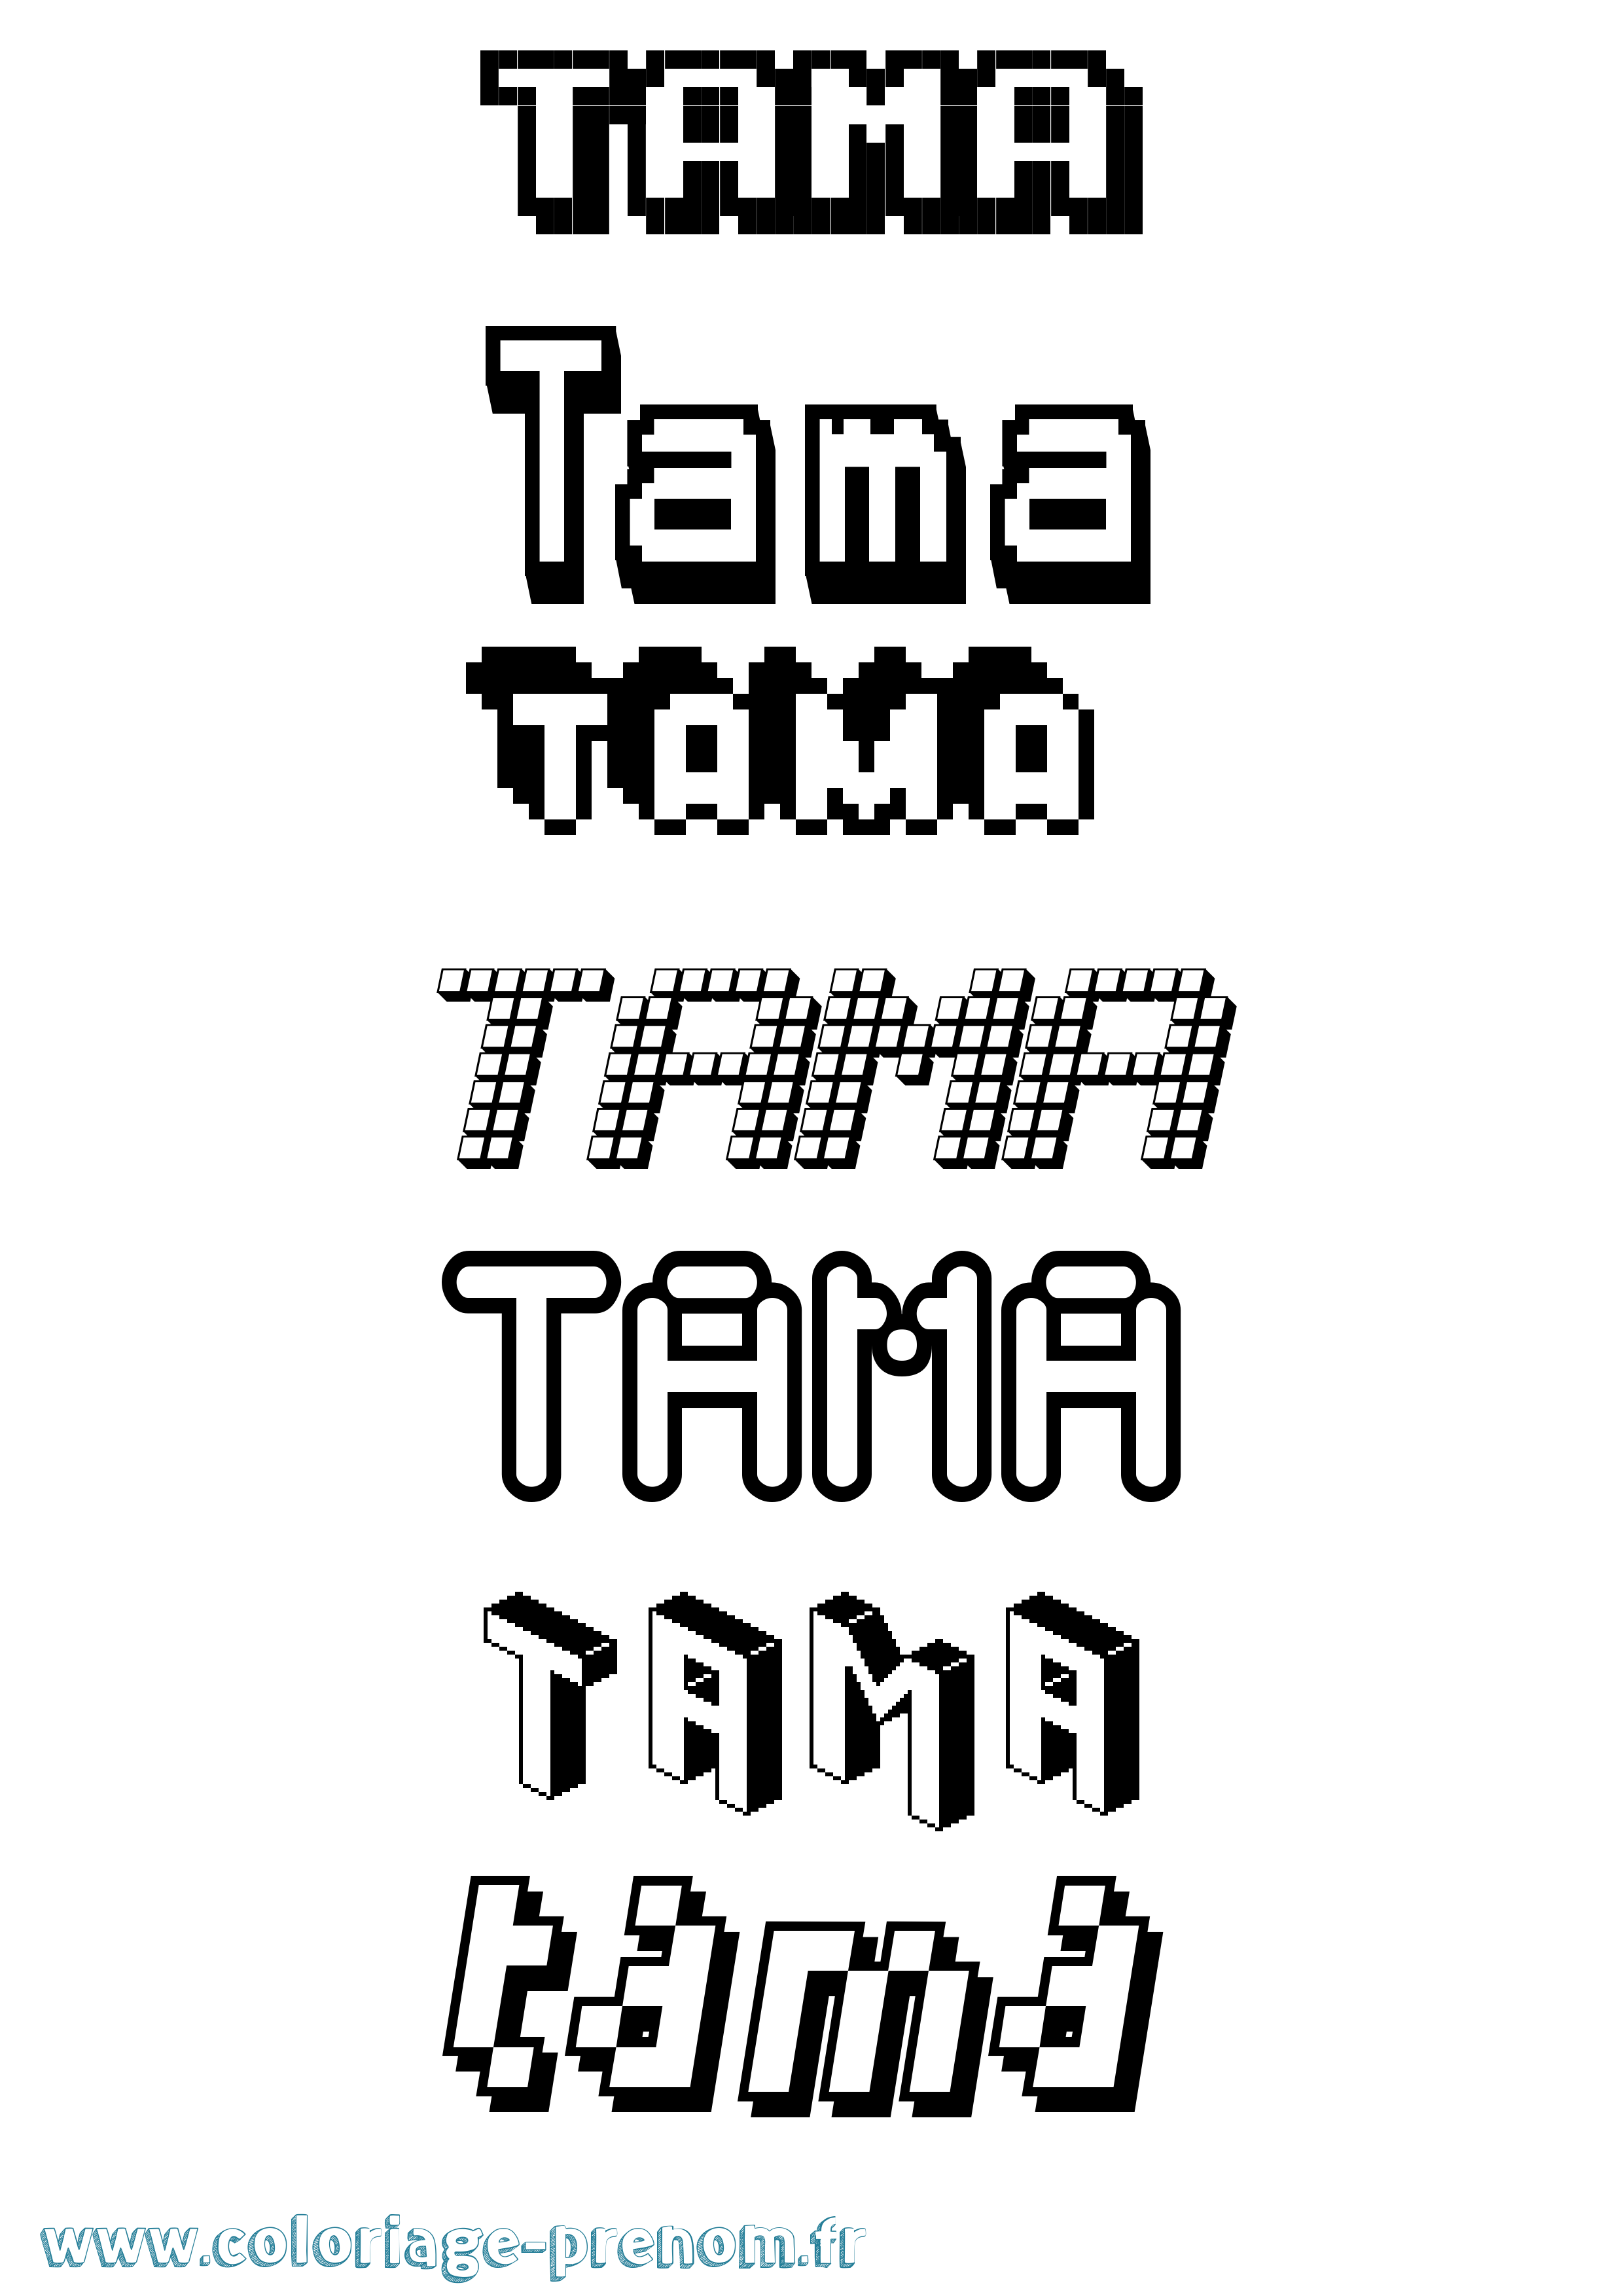 Coloriage prénom Tama Pixel